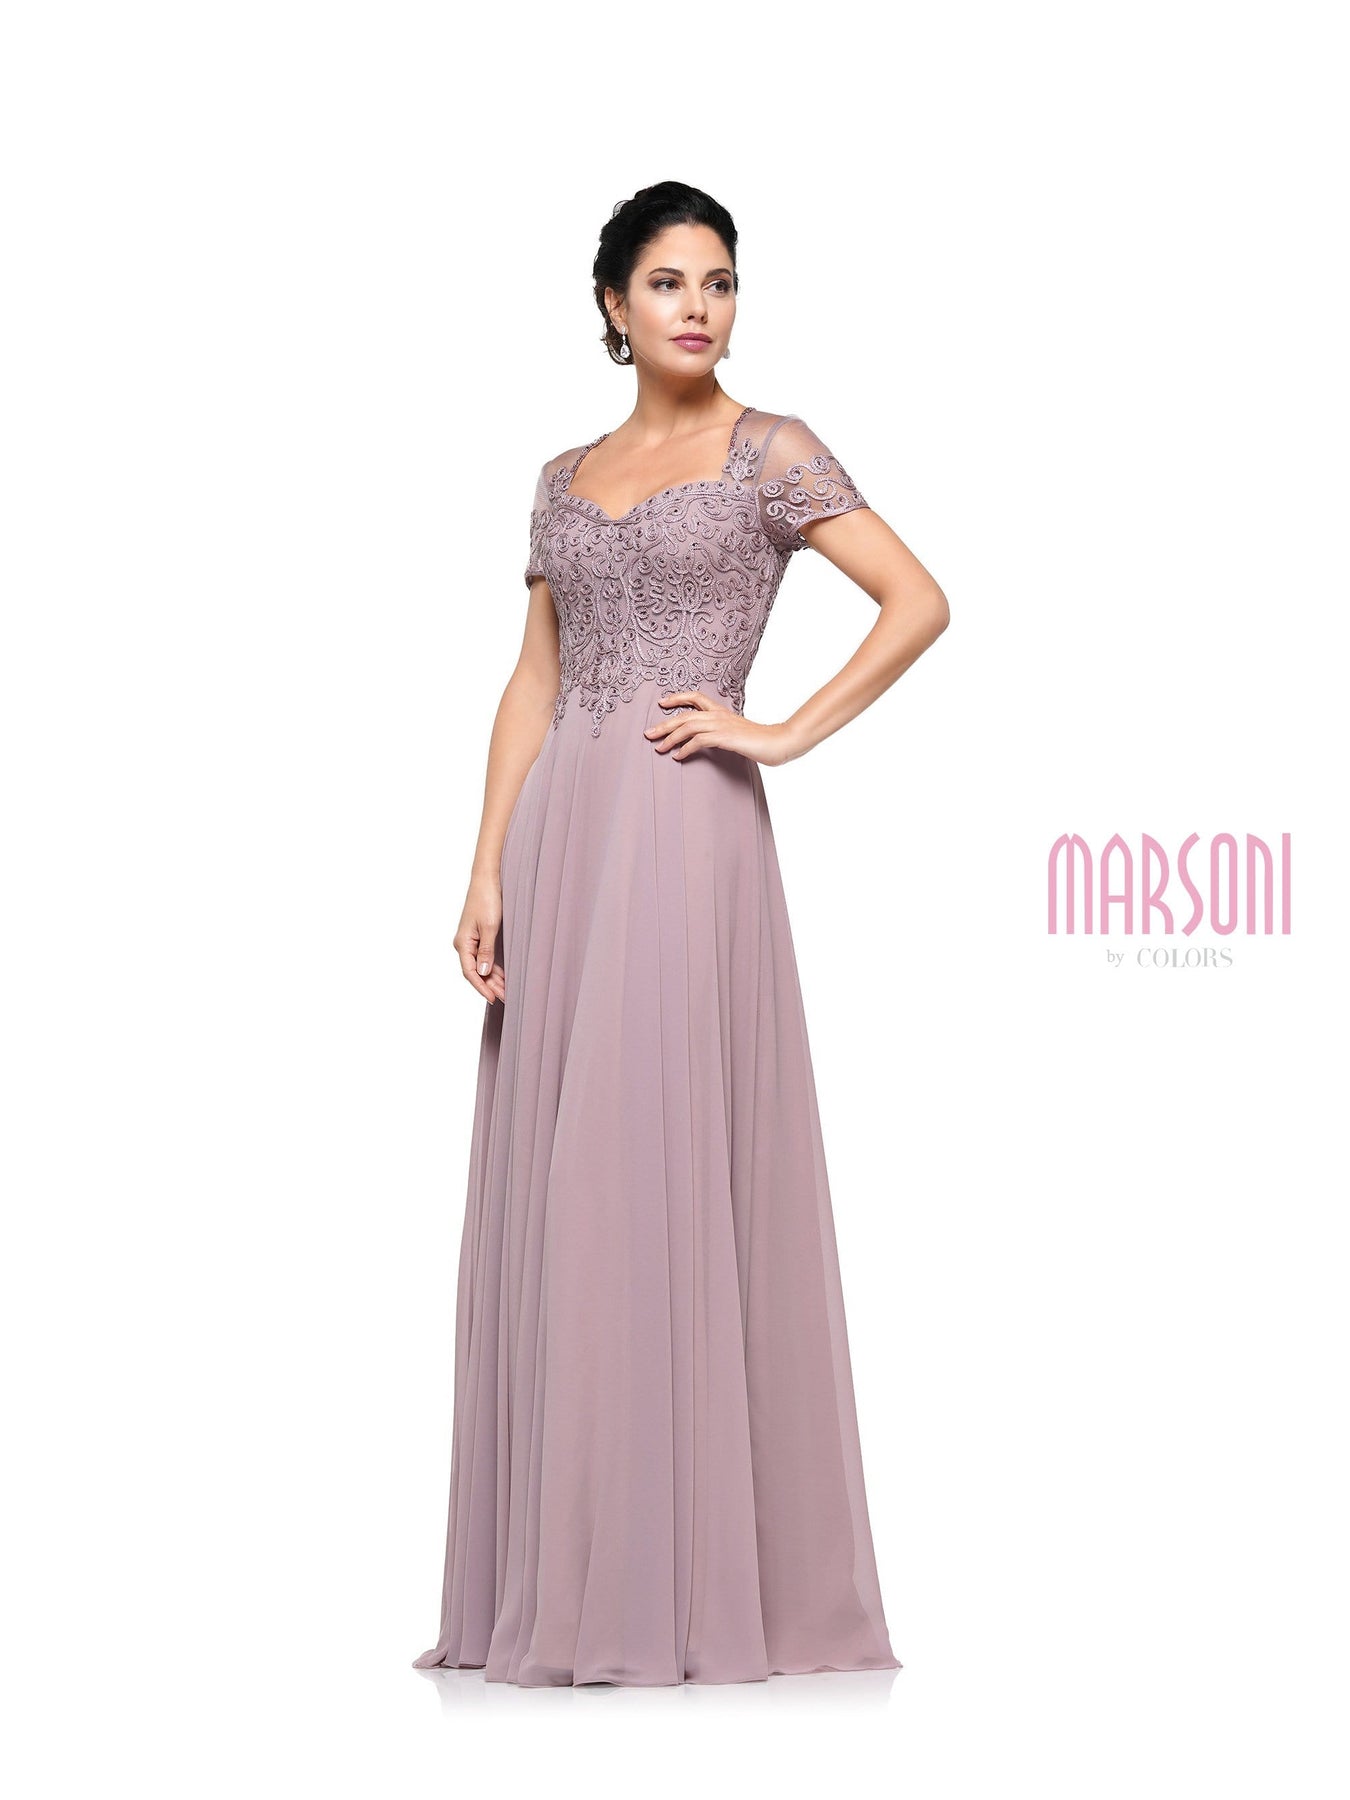 Marsoni by Colors - M271 Short Sleeve Queen Anne Soutache Gown Mother of the Bride Dresses 4 / Mauve